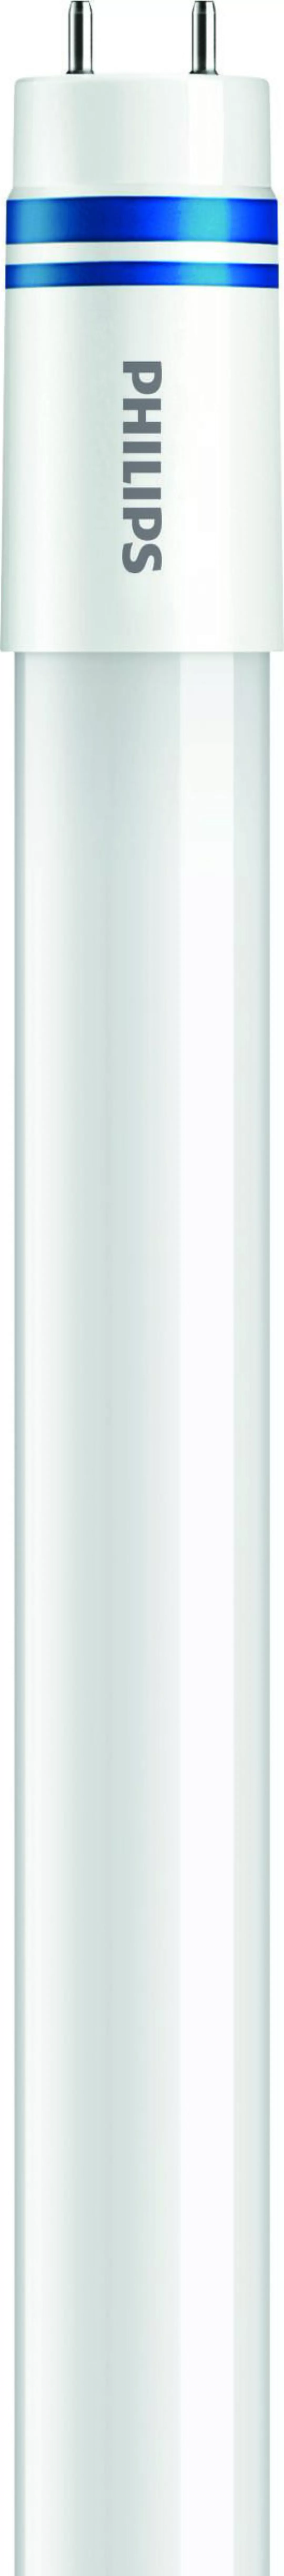 Philips Lighting LED-Tube T8 f. EVG G13, 840, 600mm MASLEDtube #46642500 günstig online kaufen